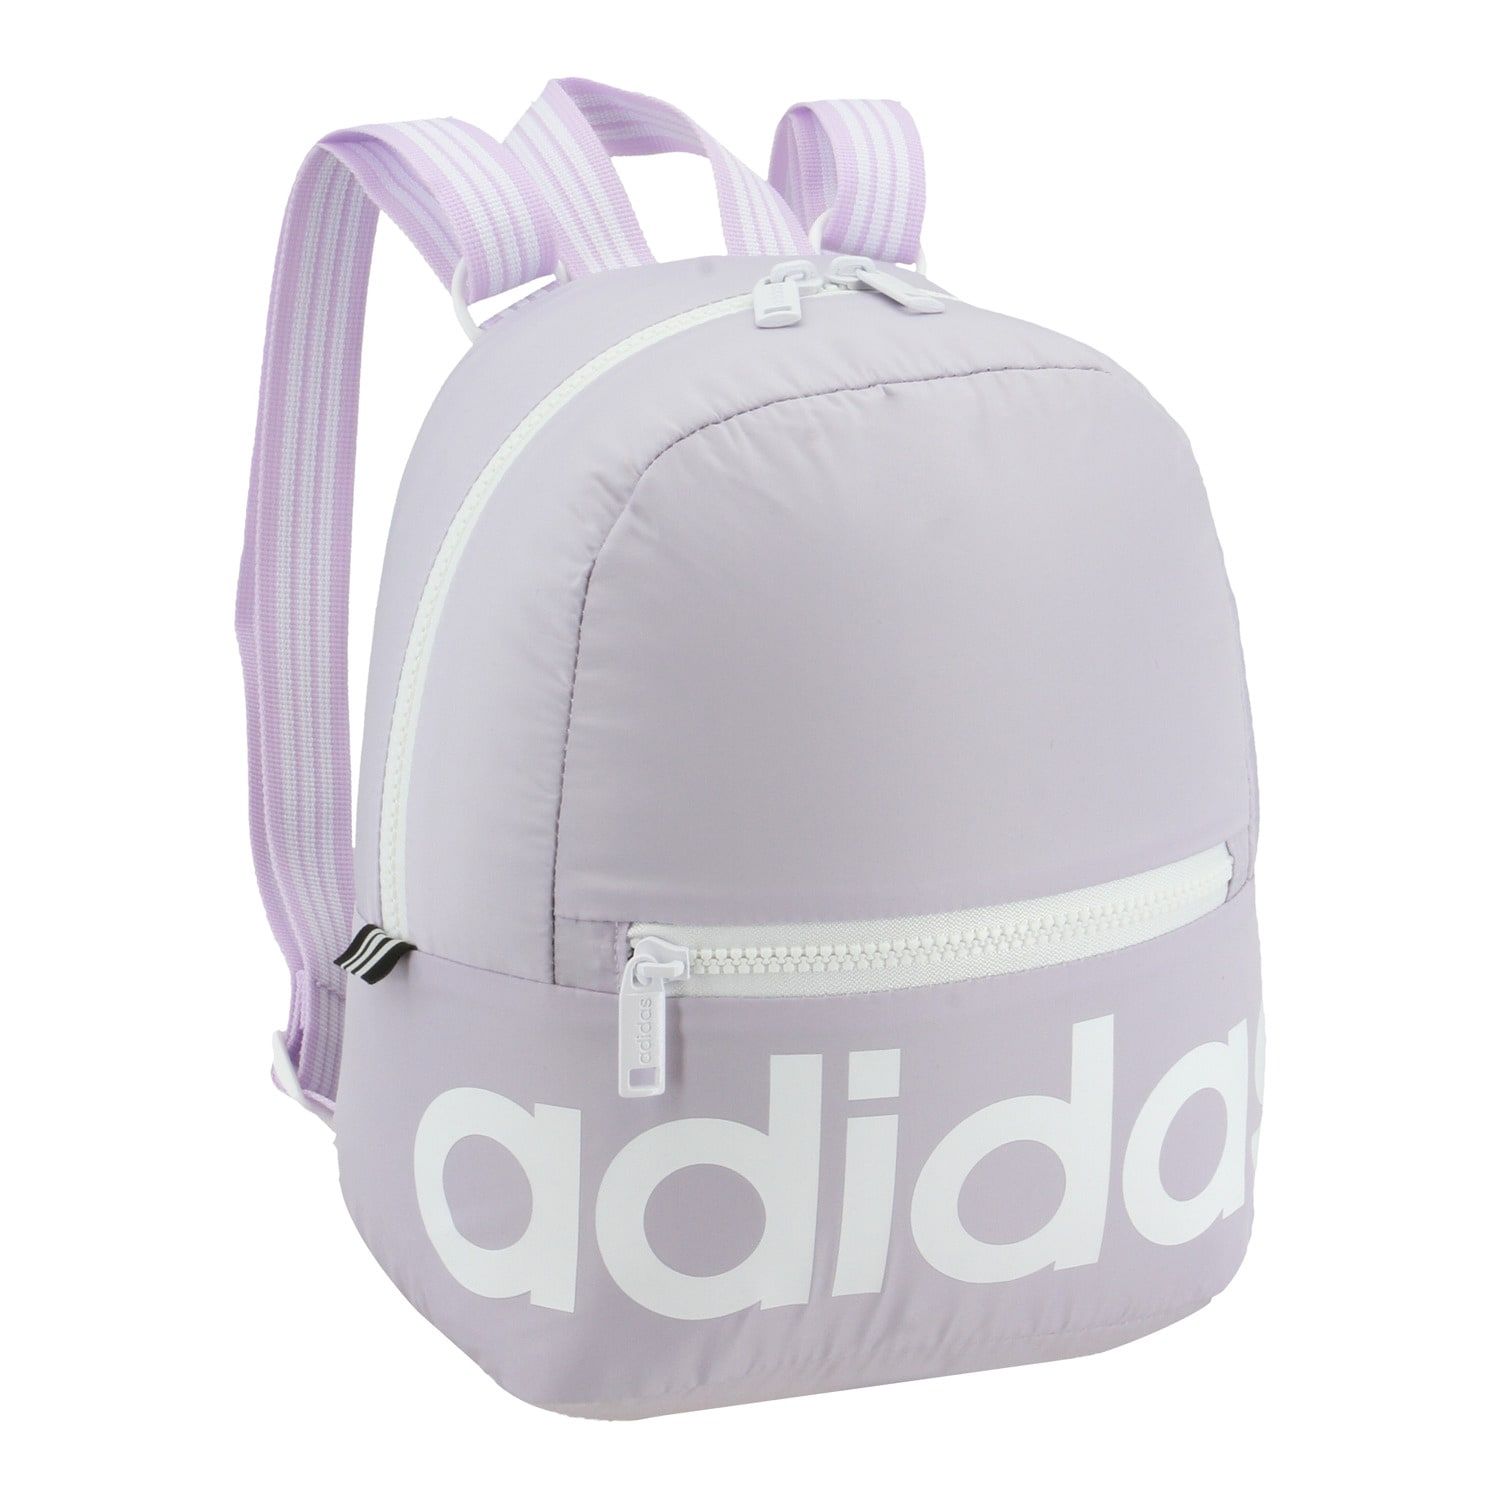 kohls adidas mini backpack